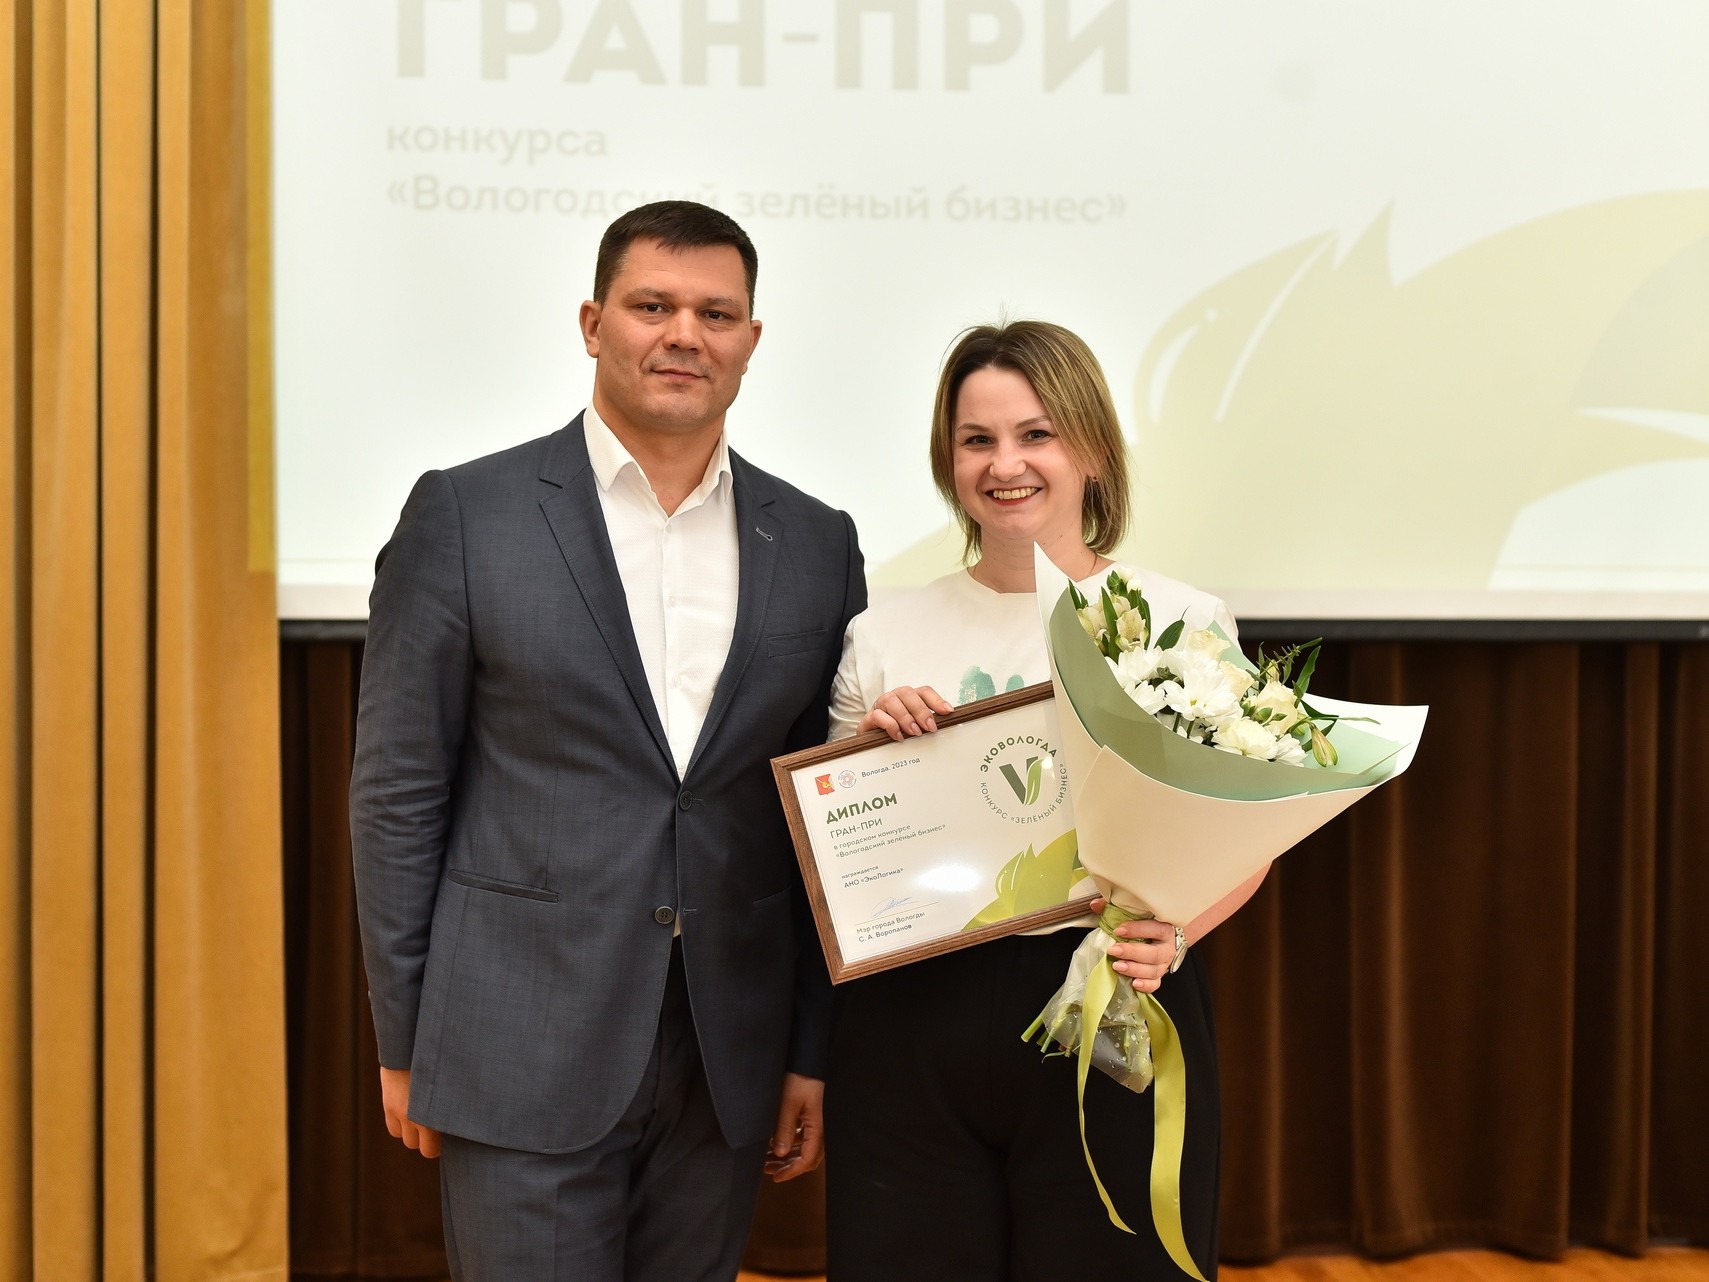 Гран-При конкурса «Вологодский зеленый бизнес» получили сразу две компании из Вологды.